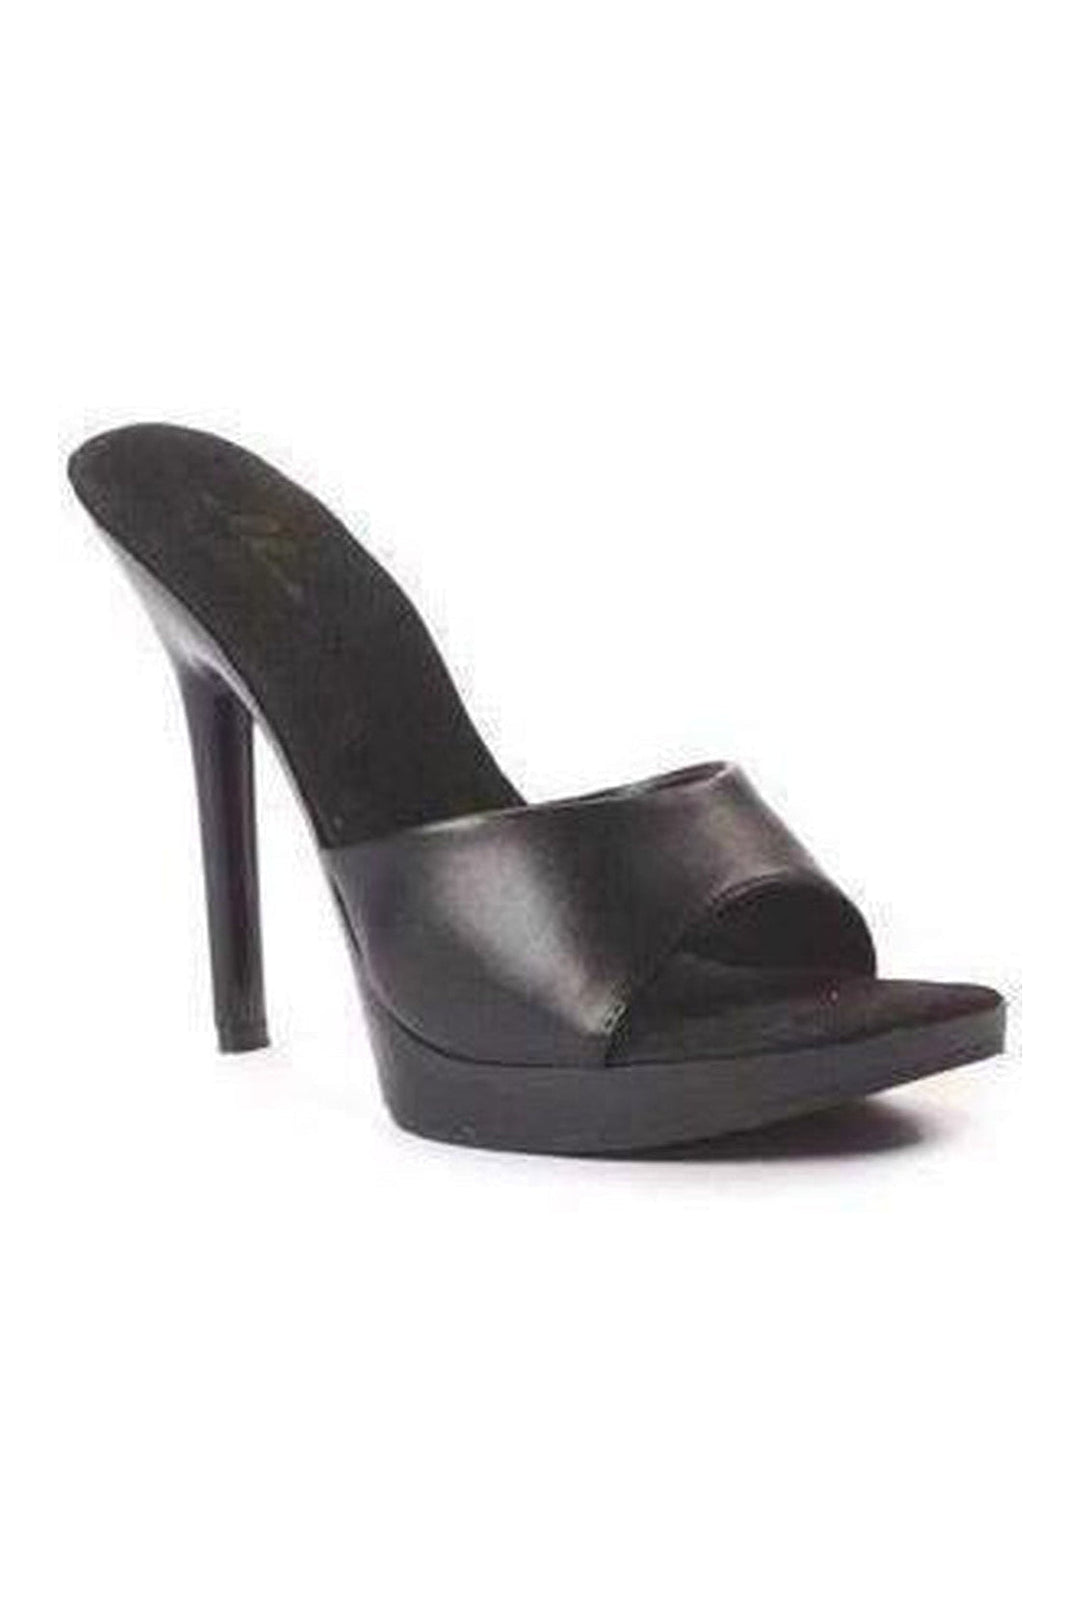 502-VANITY Slide | Black Patent-Ellie Shoes-Black-Slides-SEXYSHOES.COM